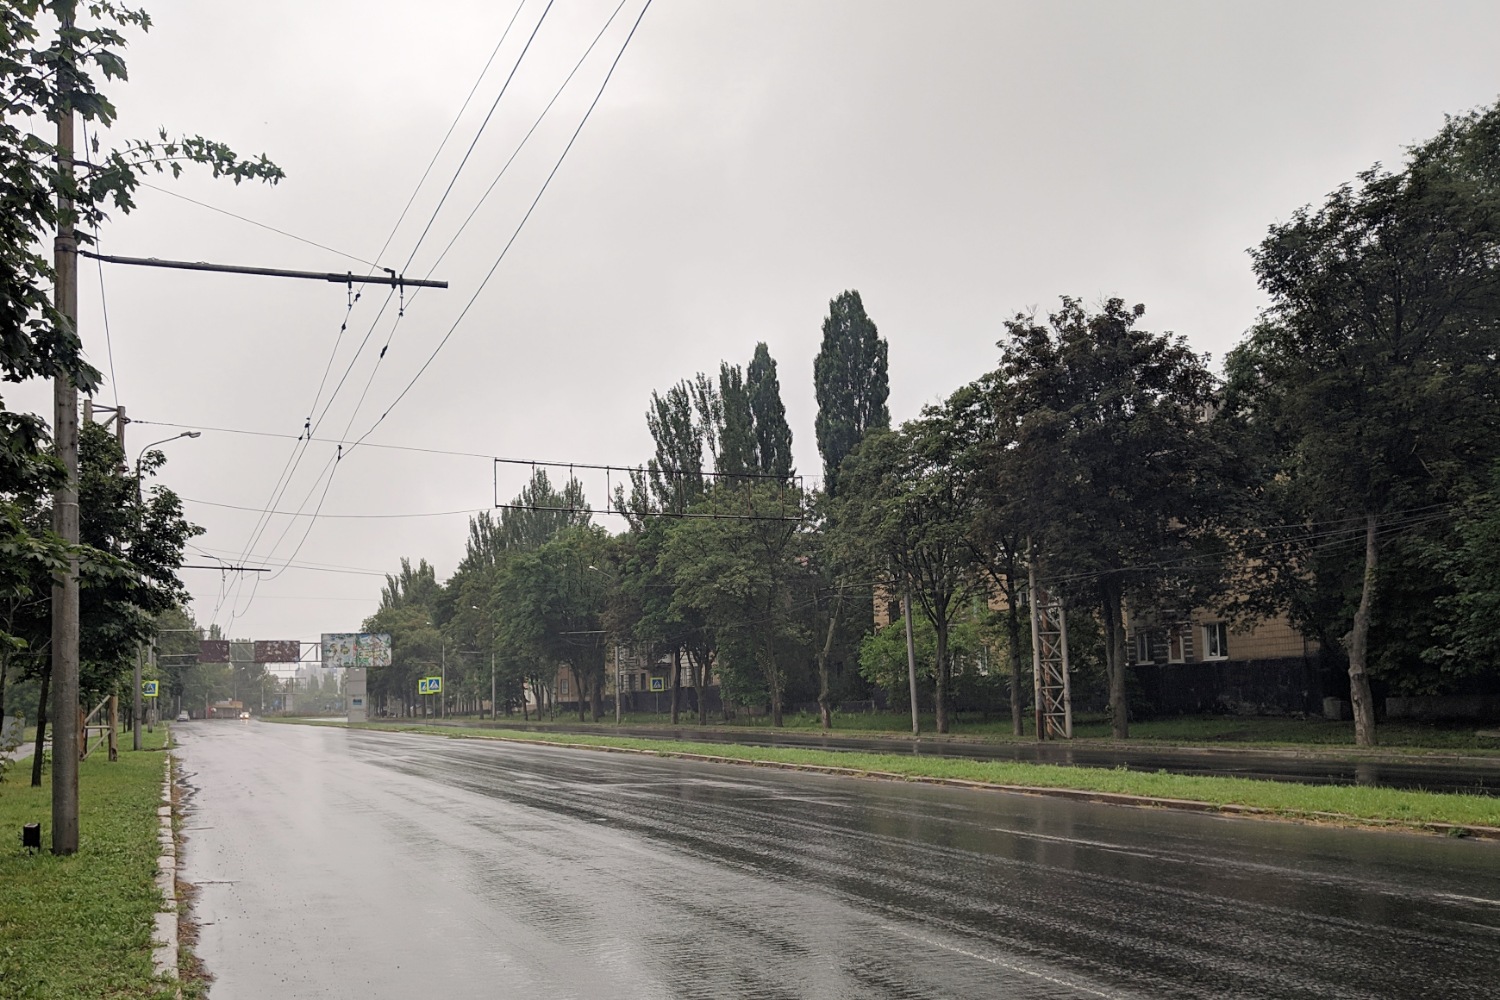 Donezk — Miscellaneous trolleybus photos; Donezk — War damage